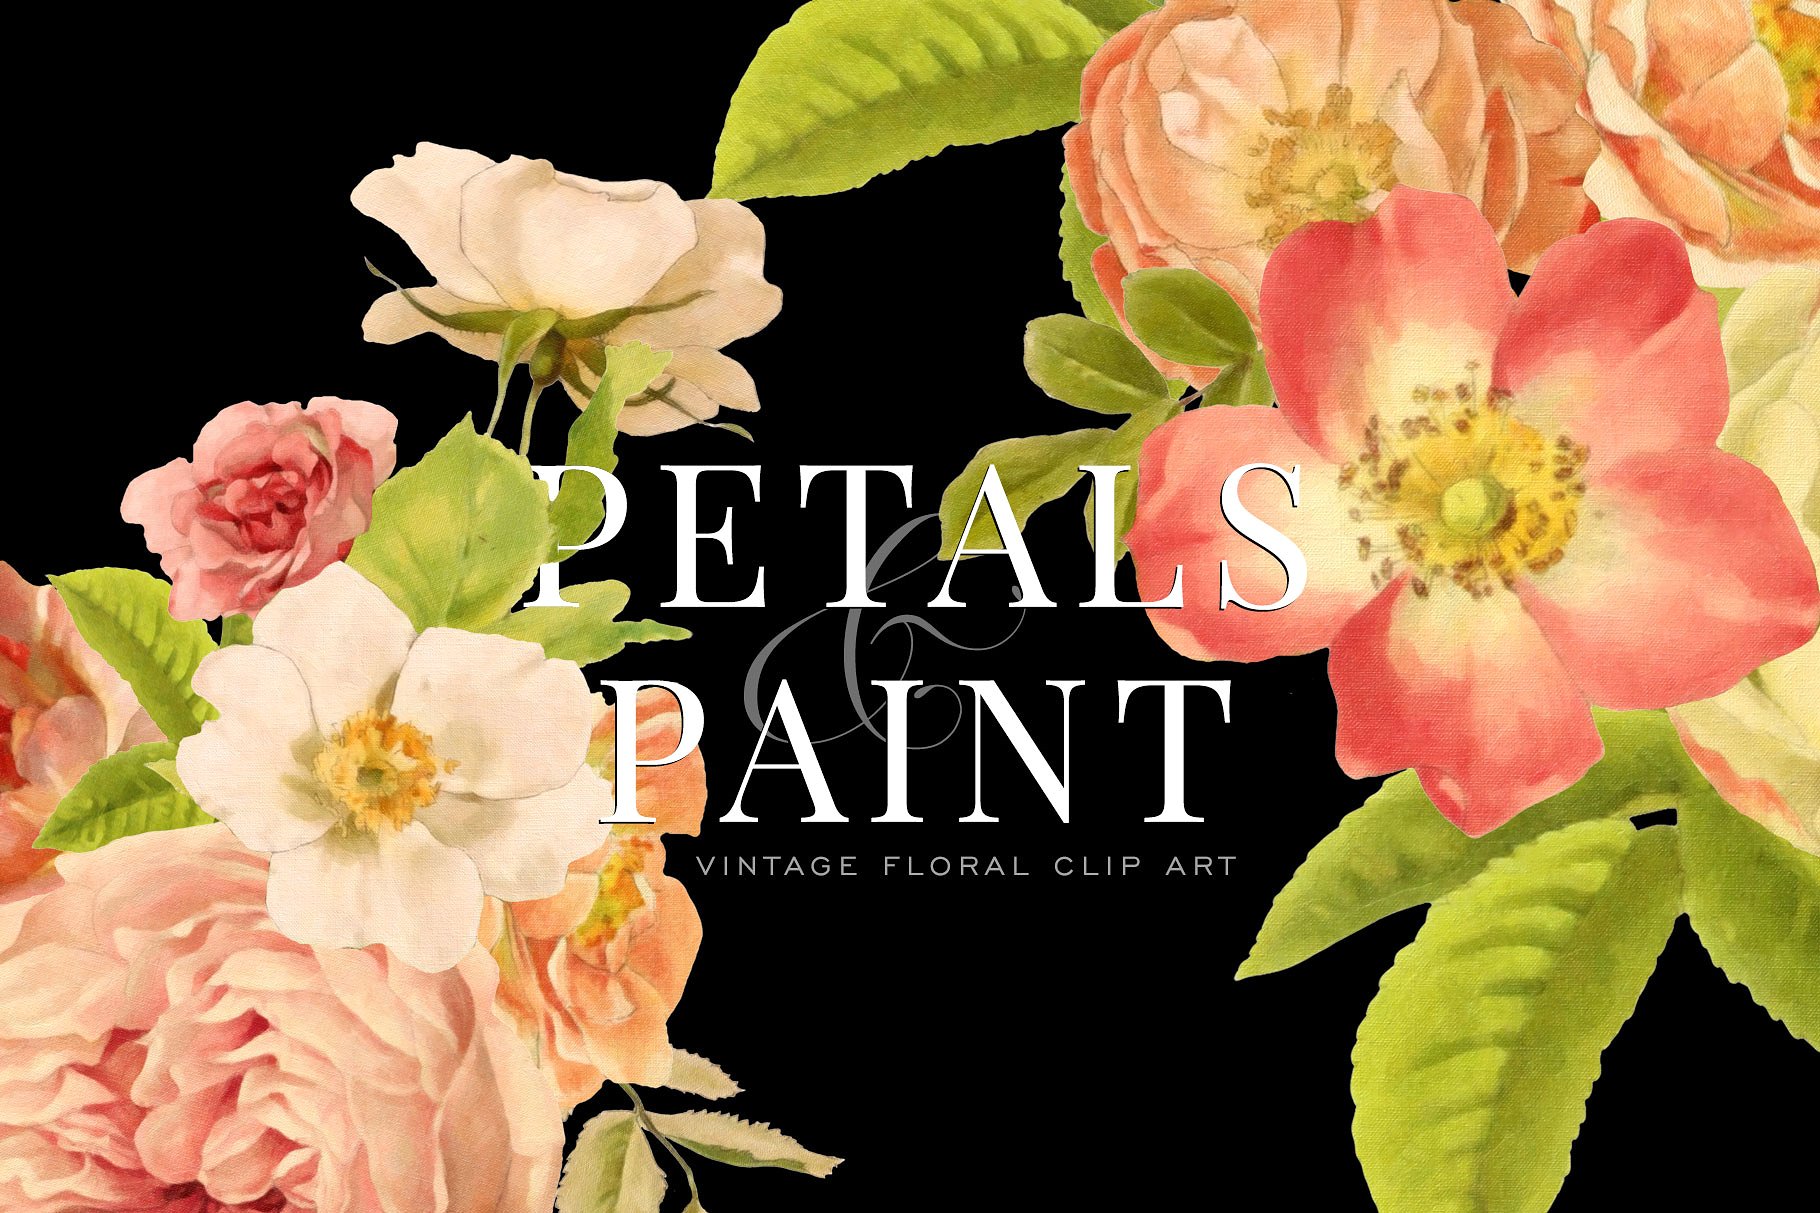 复古油画质感花卉花瓣纹理 Petals & Paint – Floral Clip Art插图(1)